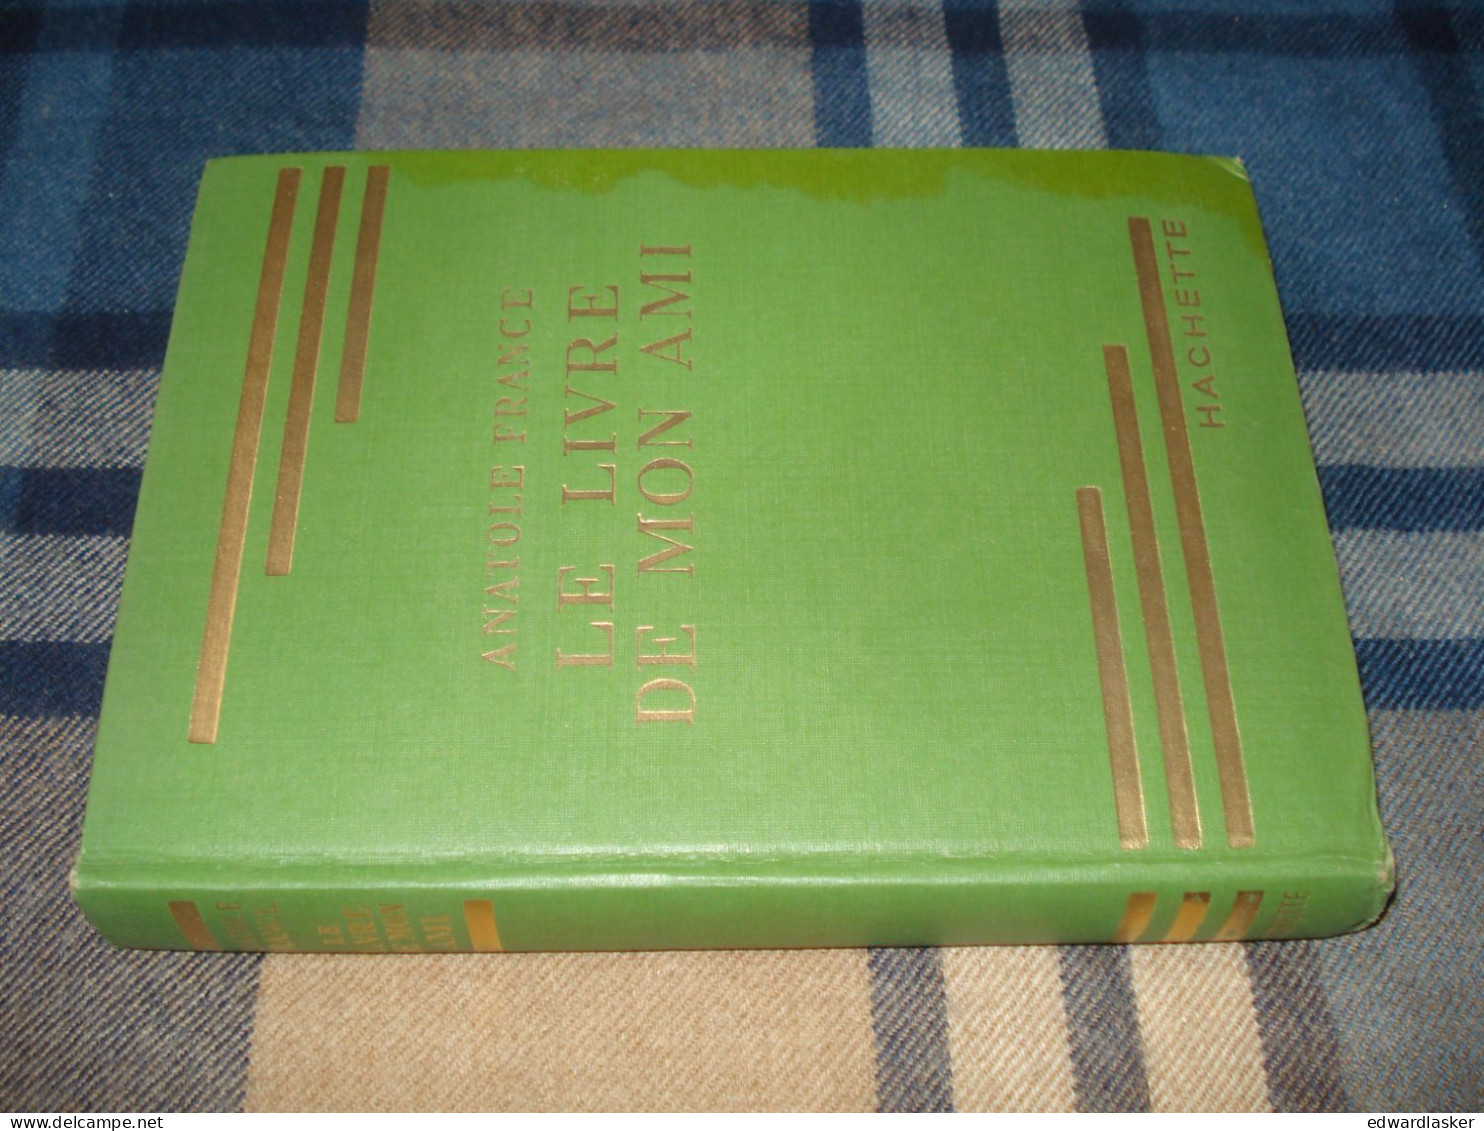 BIBLIOTHEQUE VERTE n°97 : Le livre de mon ami /Anatole France - jaquette 1957 [2]